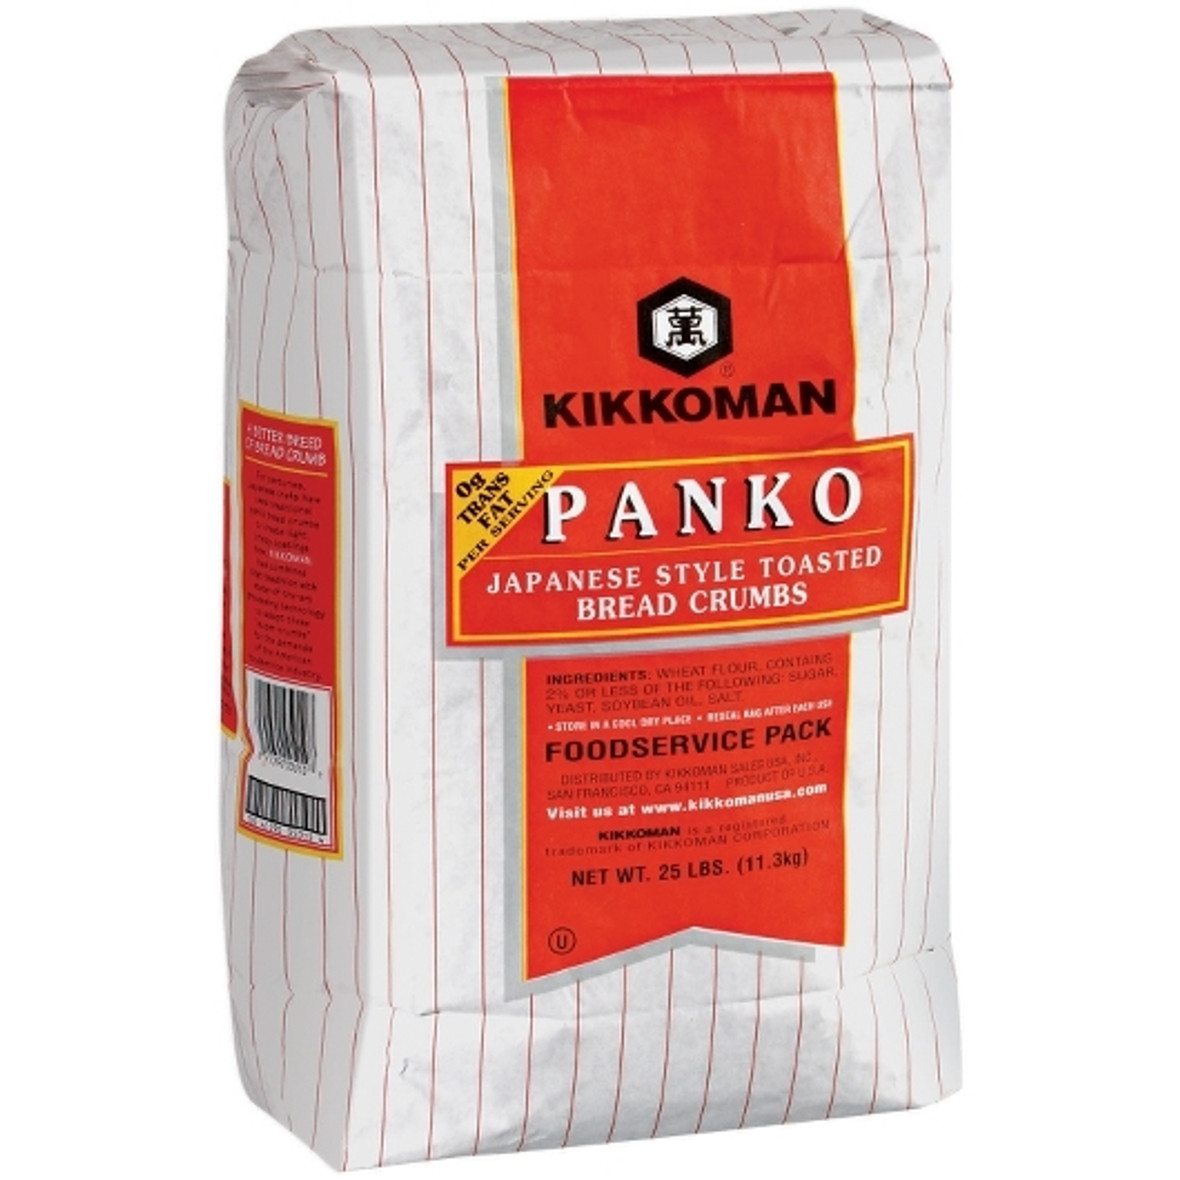 Kikkoman Panko Japanese Style Toasted Bread Crumbs